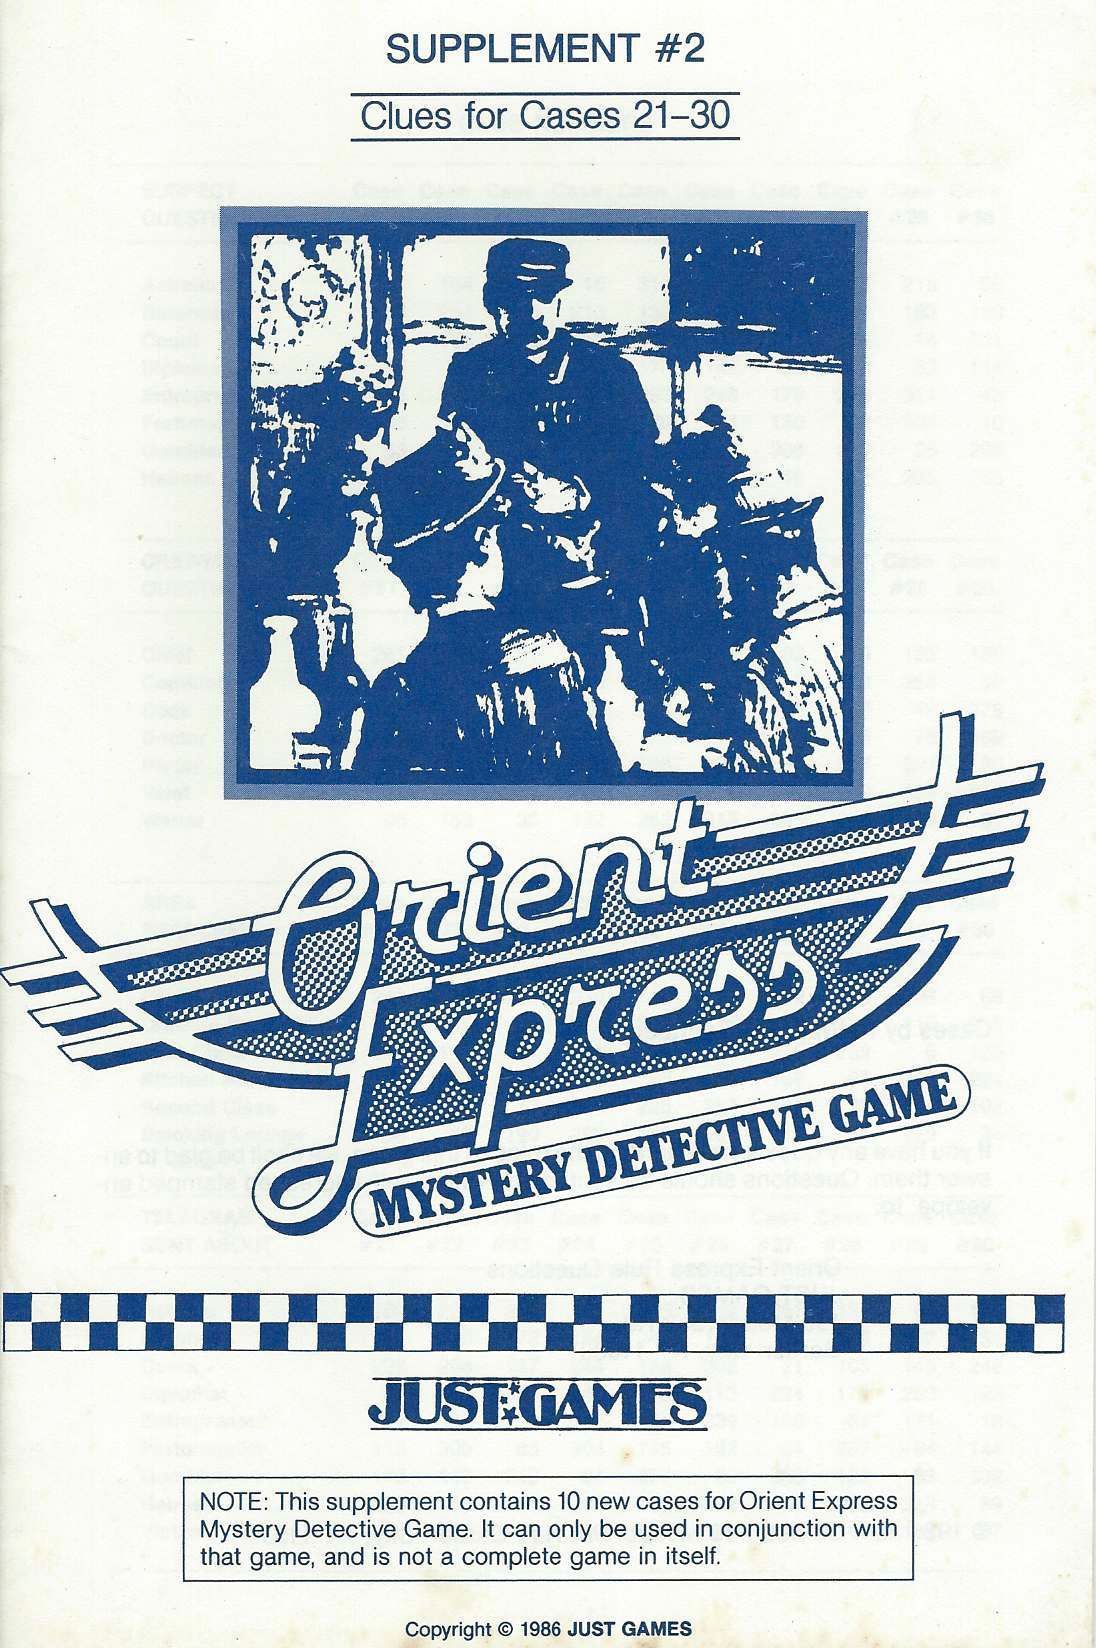 Orient Express Supplement #2